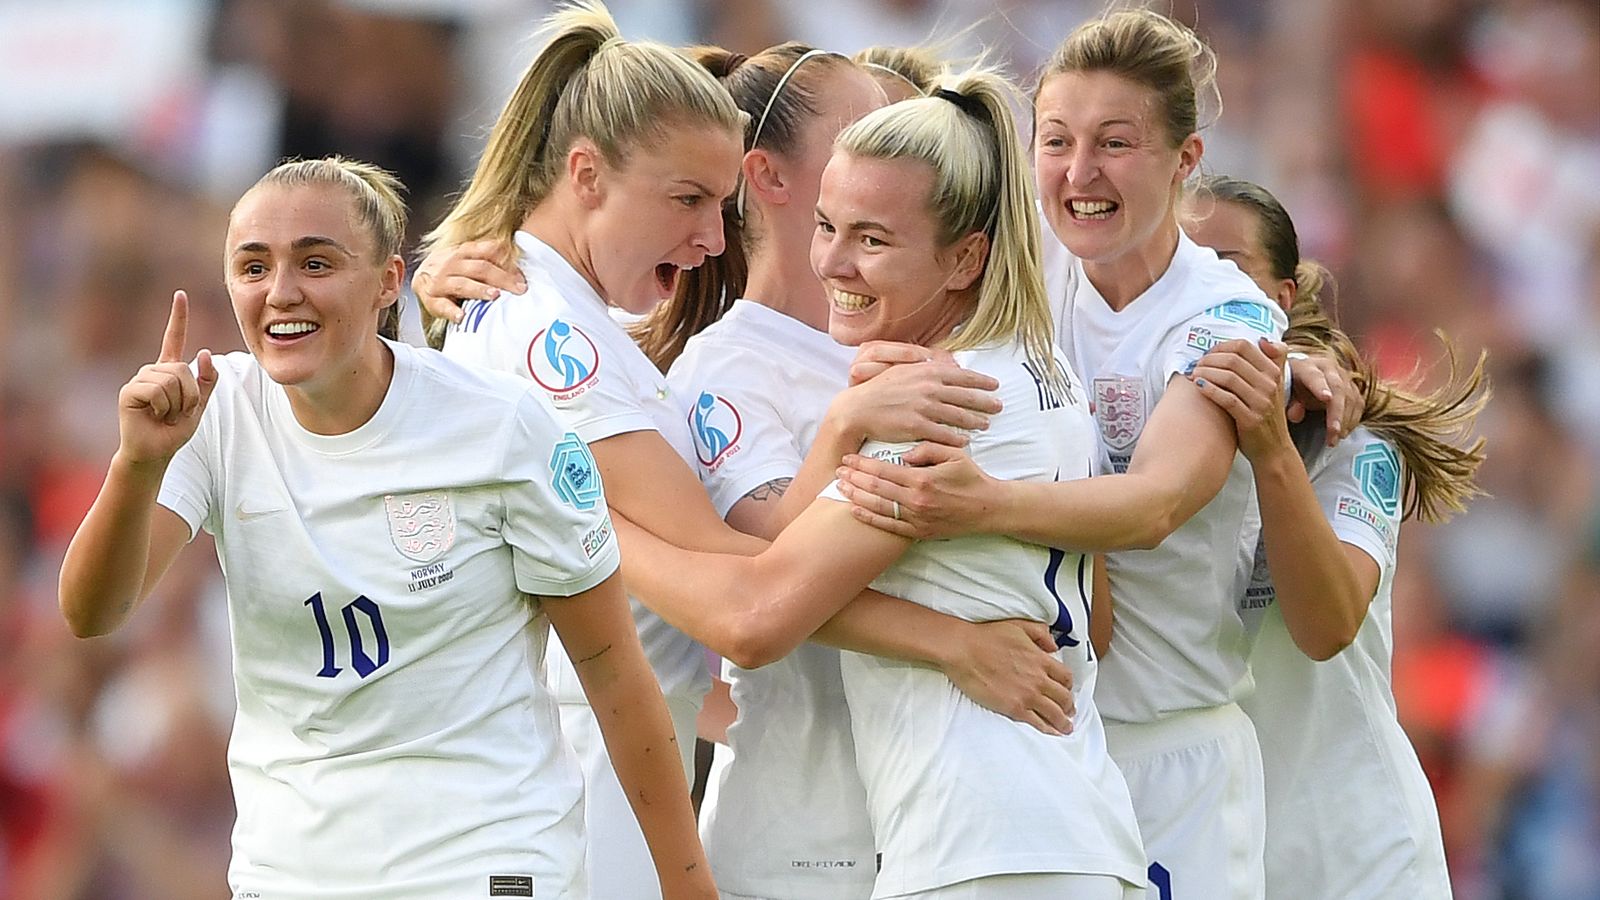 Anglia Kobiety 8:0 Norwegia: Beth Meade zdobywa hat-tricka przeciwko lwicom, bijąc rekordy w Norwegii |  wiadomości piłkarskie